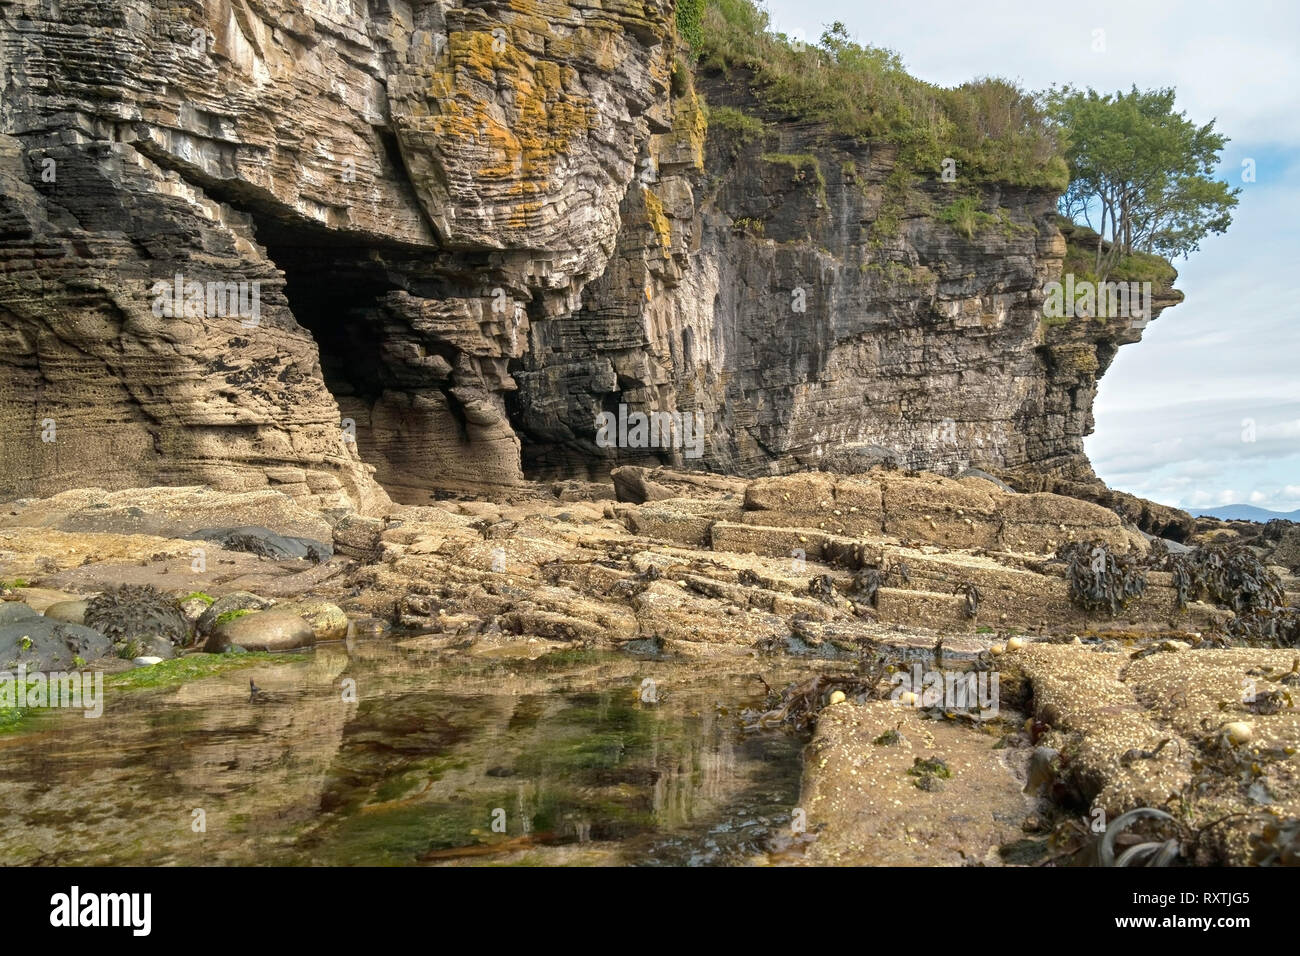 Les roches érodées de falaises et grottes de la mer avec piscine dans les rochers sur le rivage près de Elgol sur l'île écossaise de Skye, Écosse, Royaume-Uni Banque D'Images